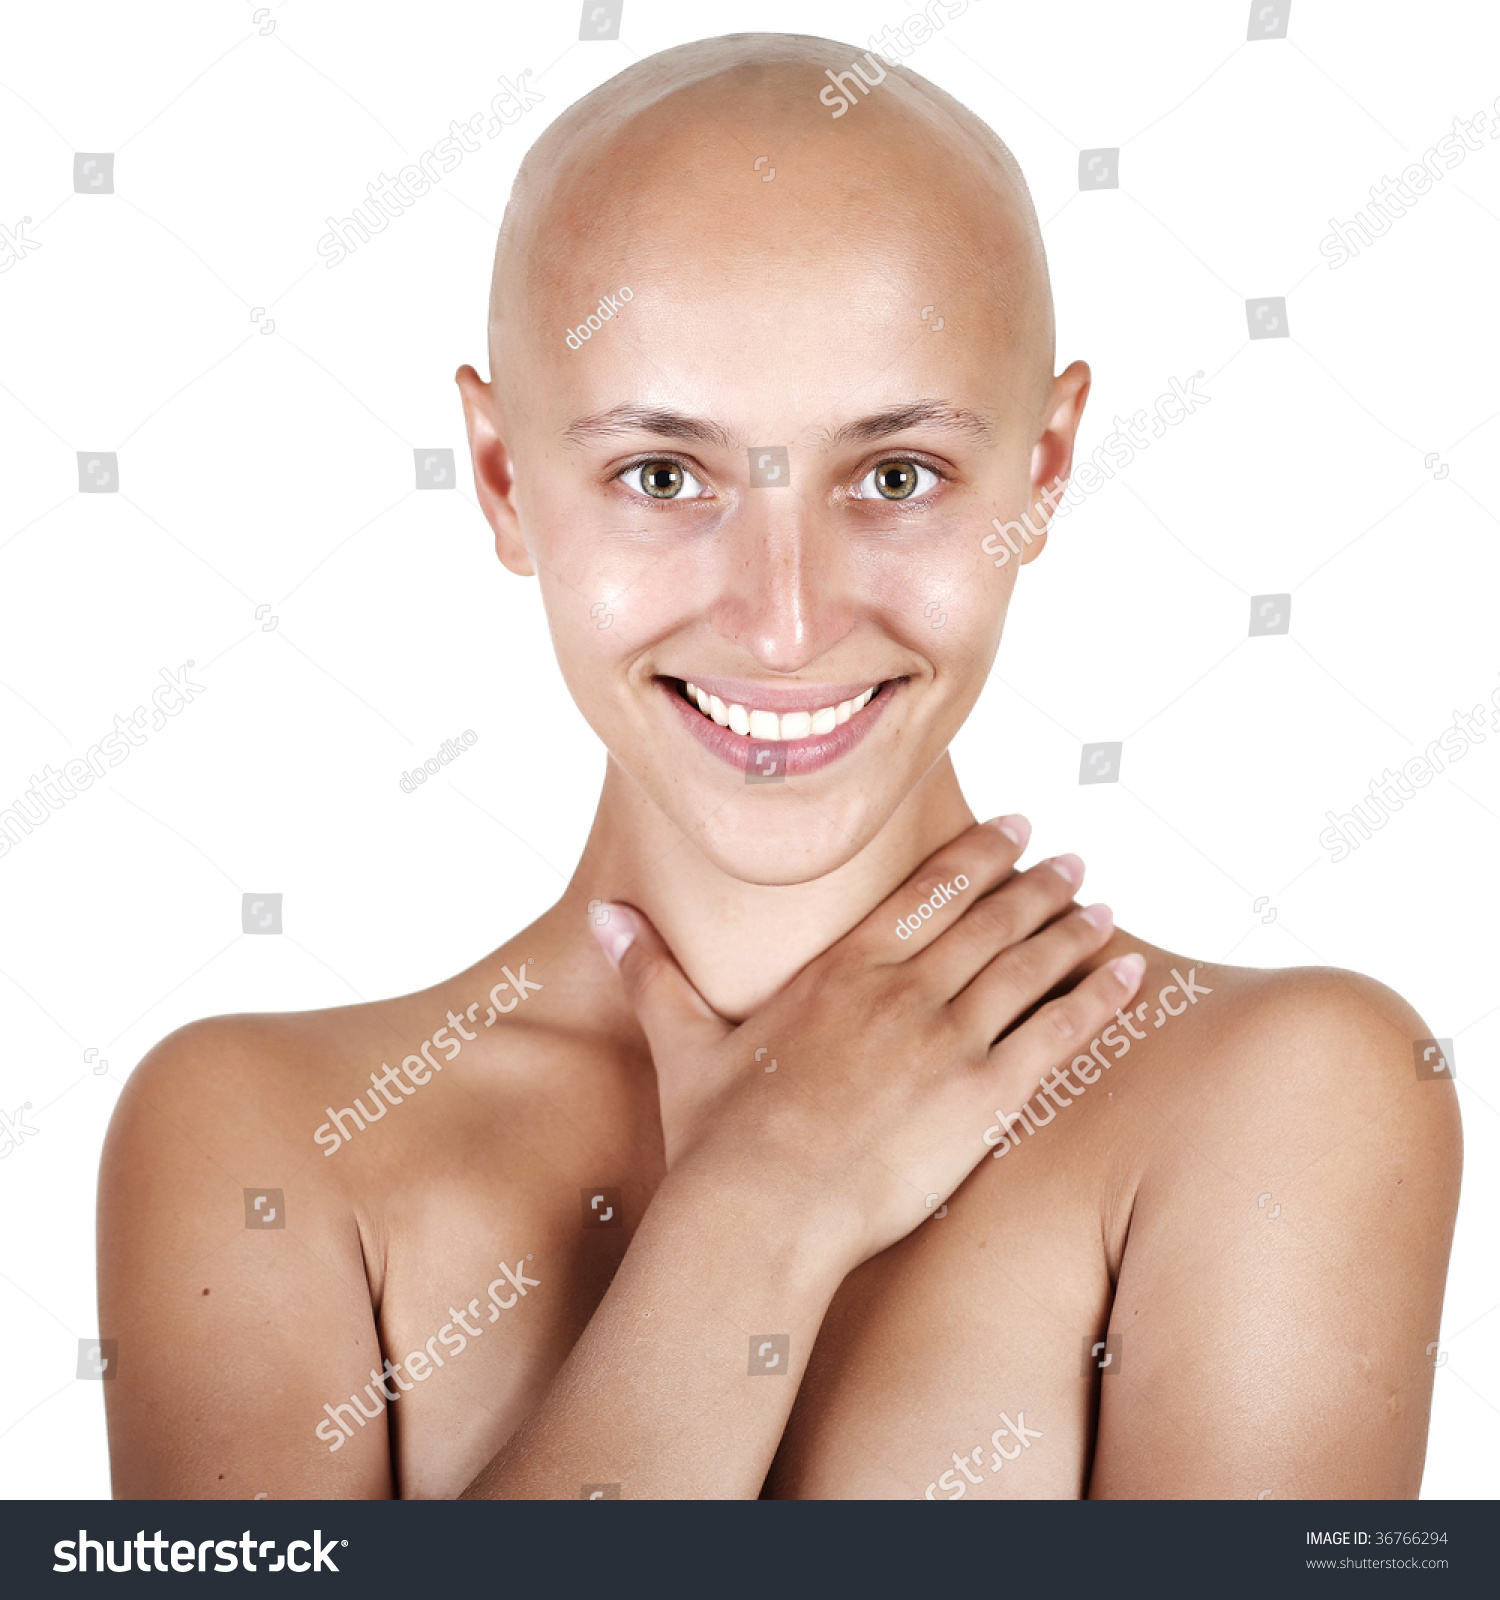 Bald Headed Nude 31